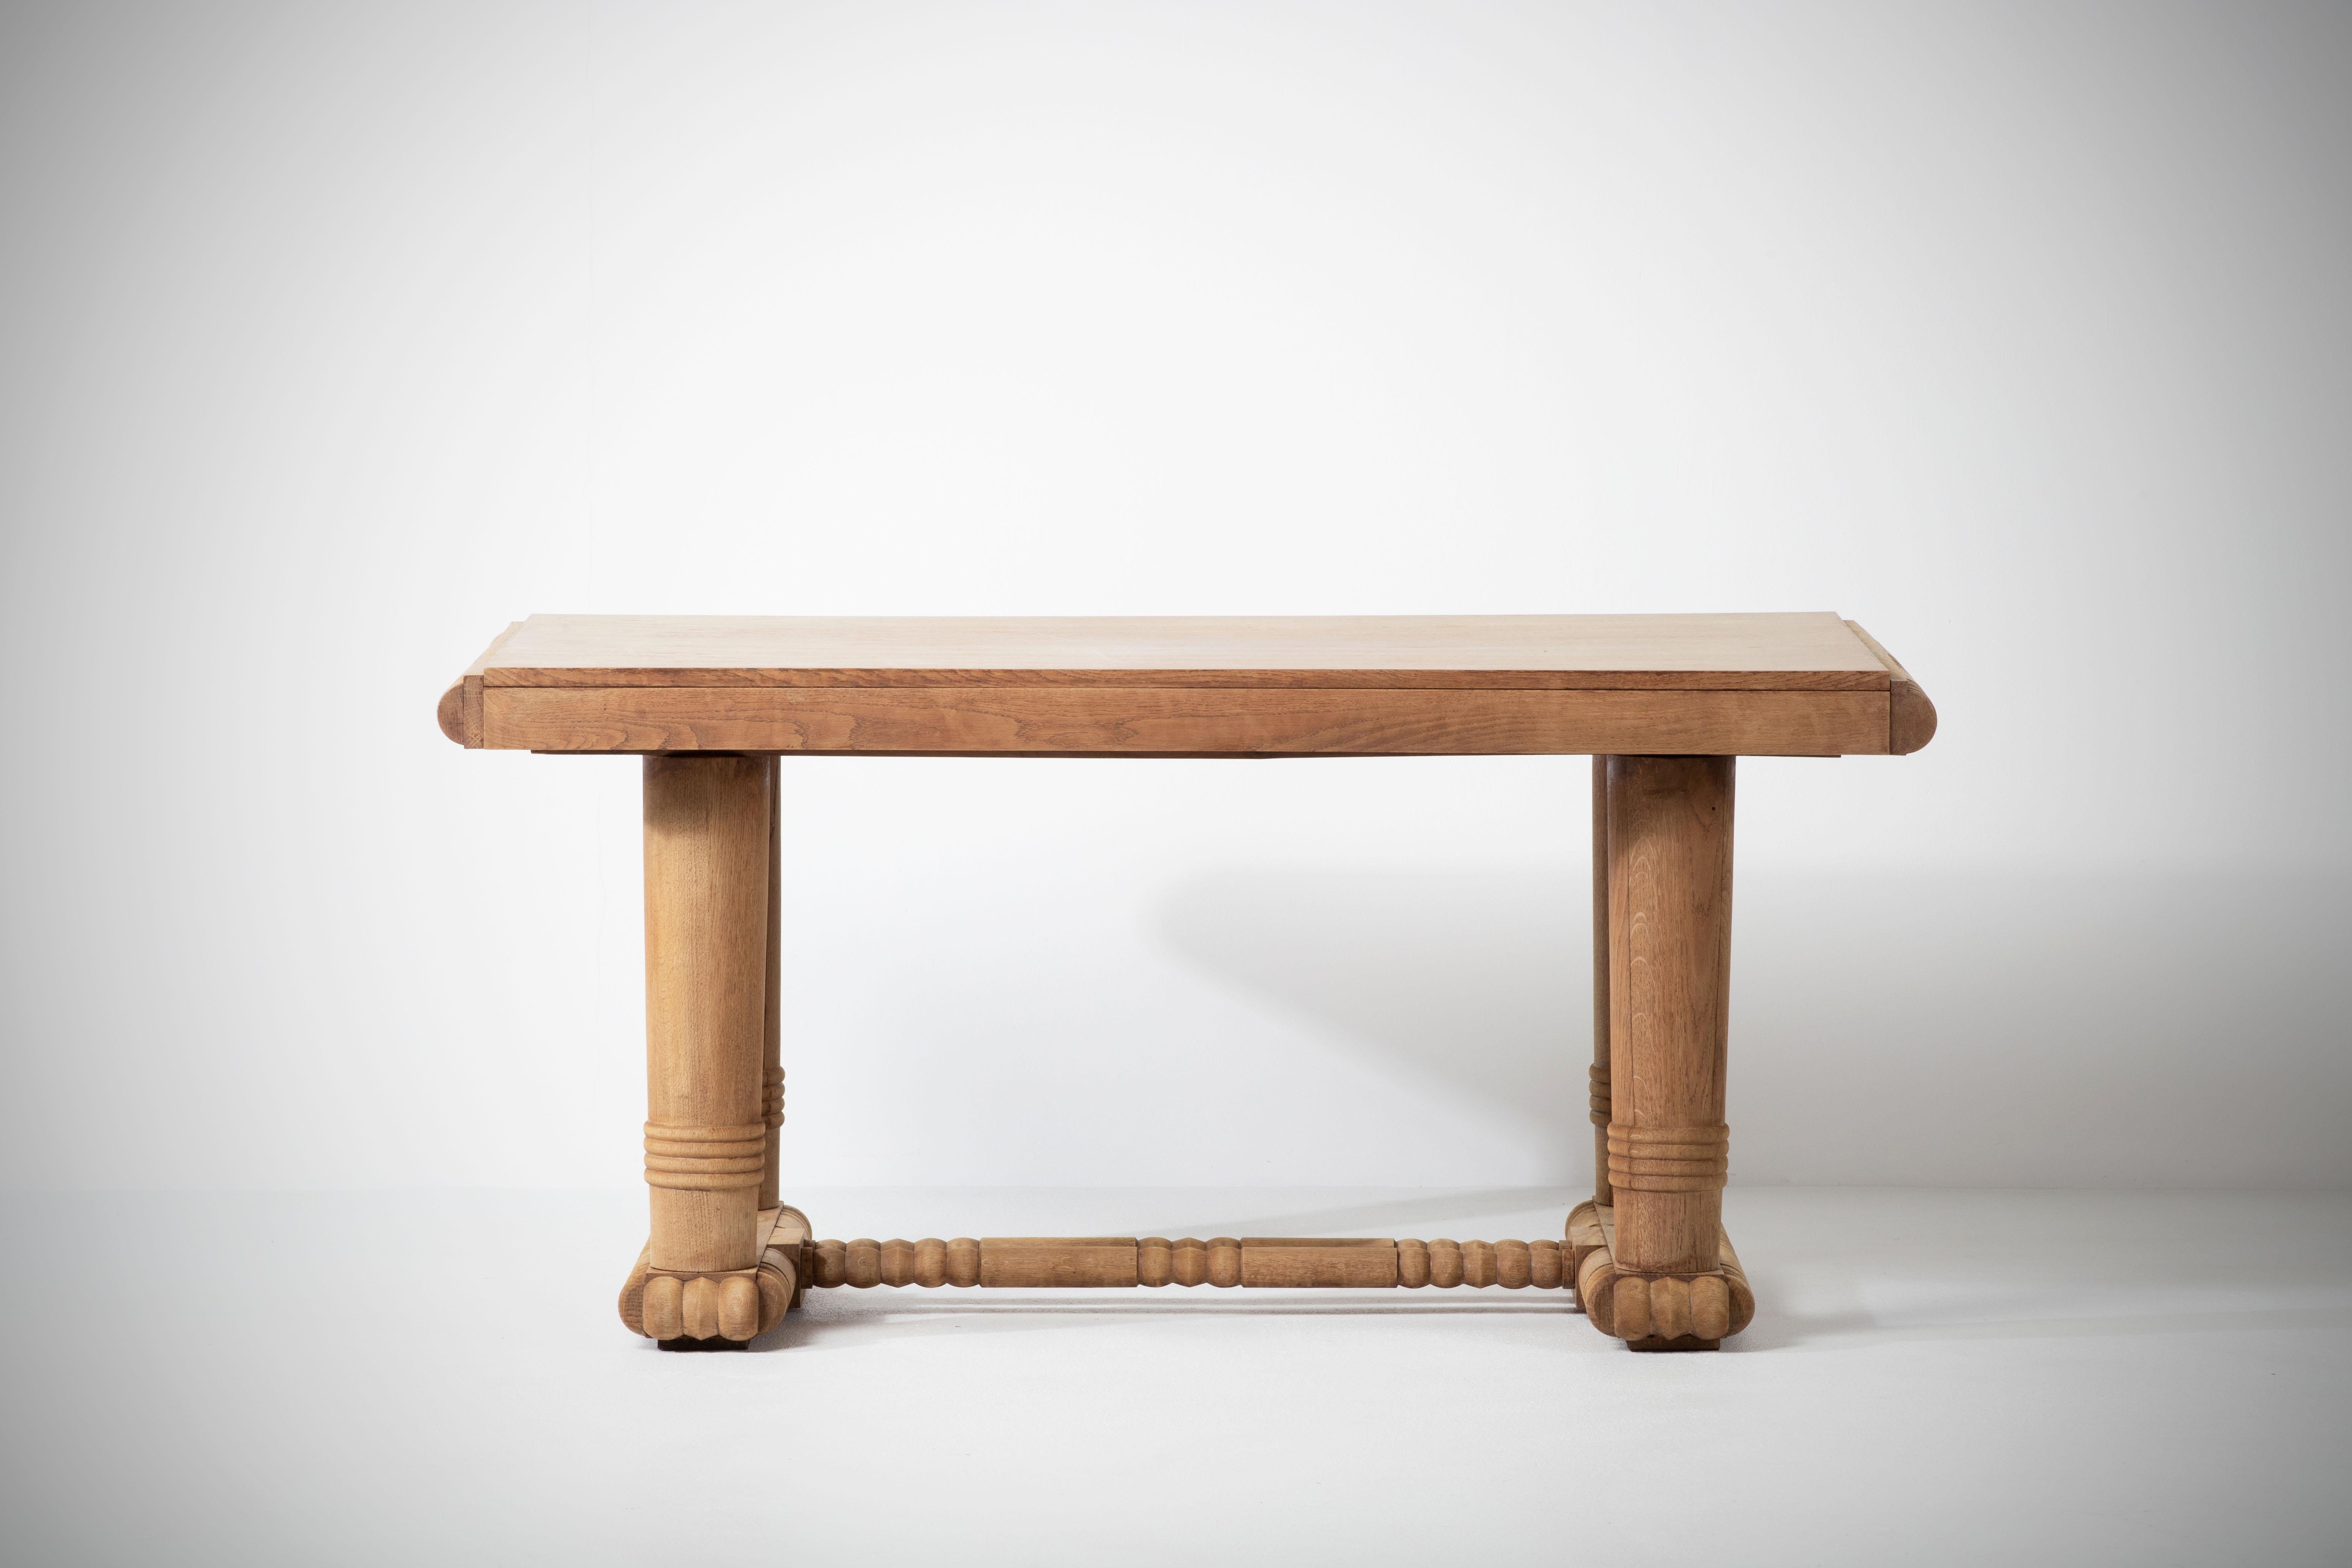 Ausziehbarer Esstisch, entworfen in den 1940er Jahren in Frankreich. 
Die Beine dieses Tisches sind schön geformt und zeigen schöne organische Formen. Die Platte ist rechteckig und bietet Platz für zwei ausziehbare Blätter, 34 cm (nicht im